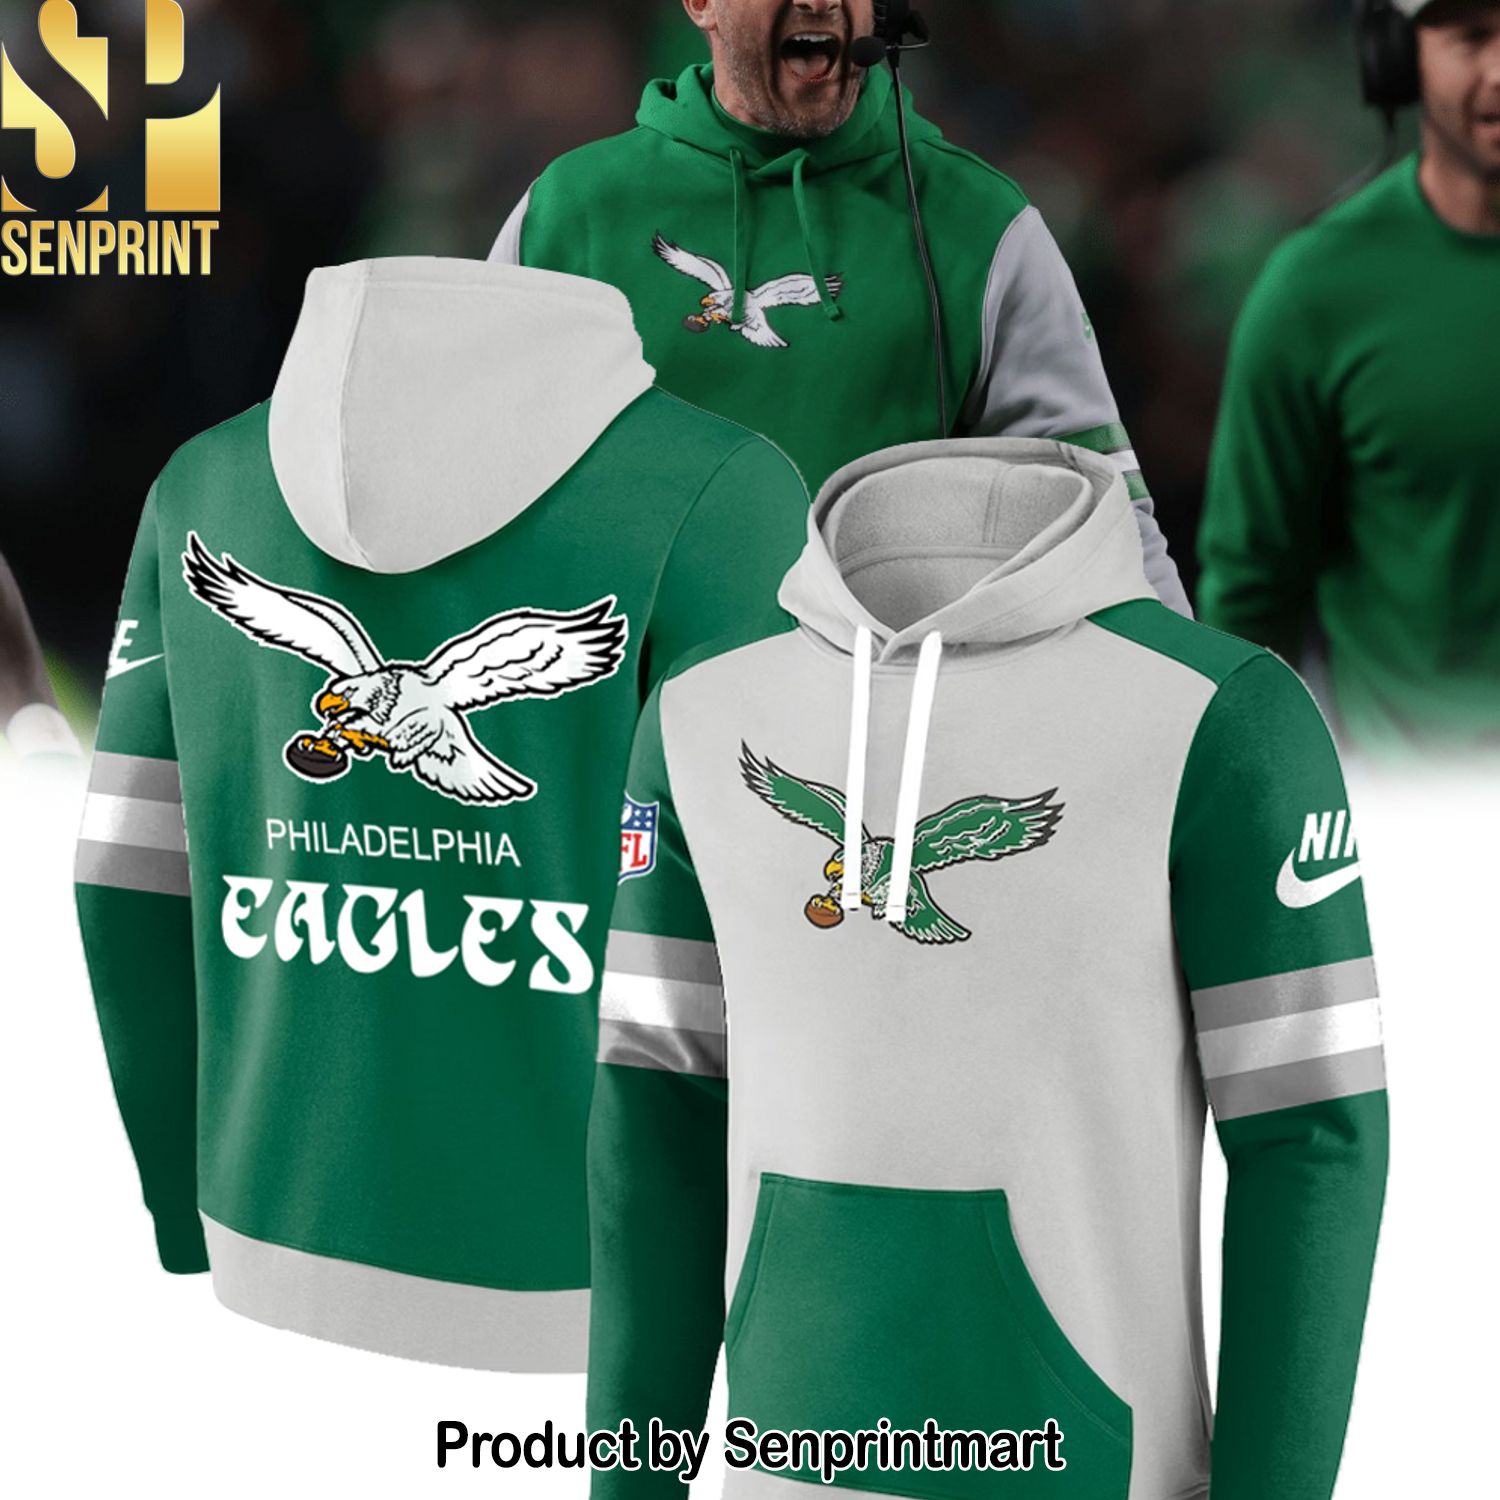 Philadelphia Eagles Best Combo Full Printing Shirt